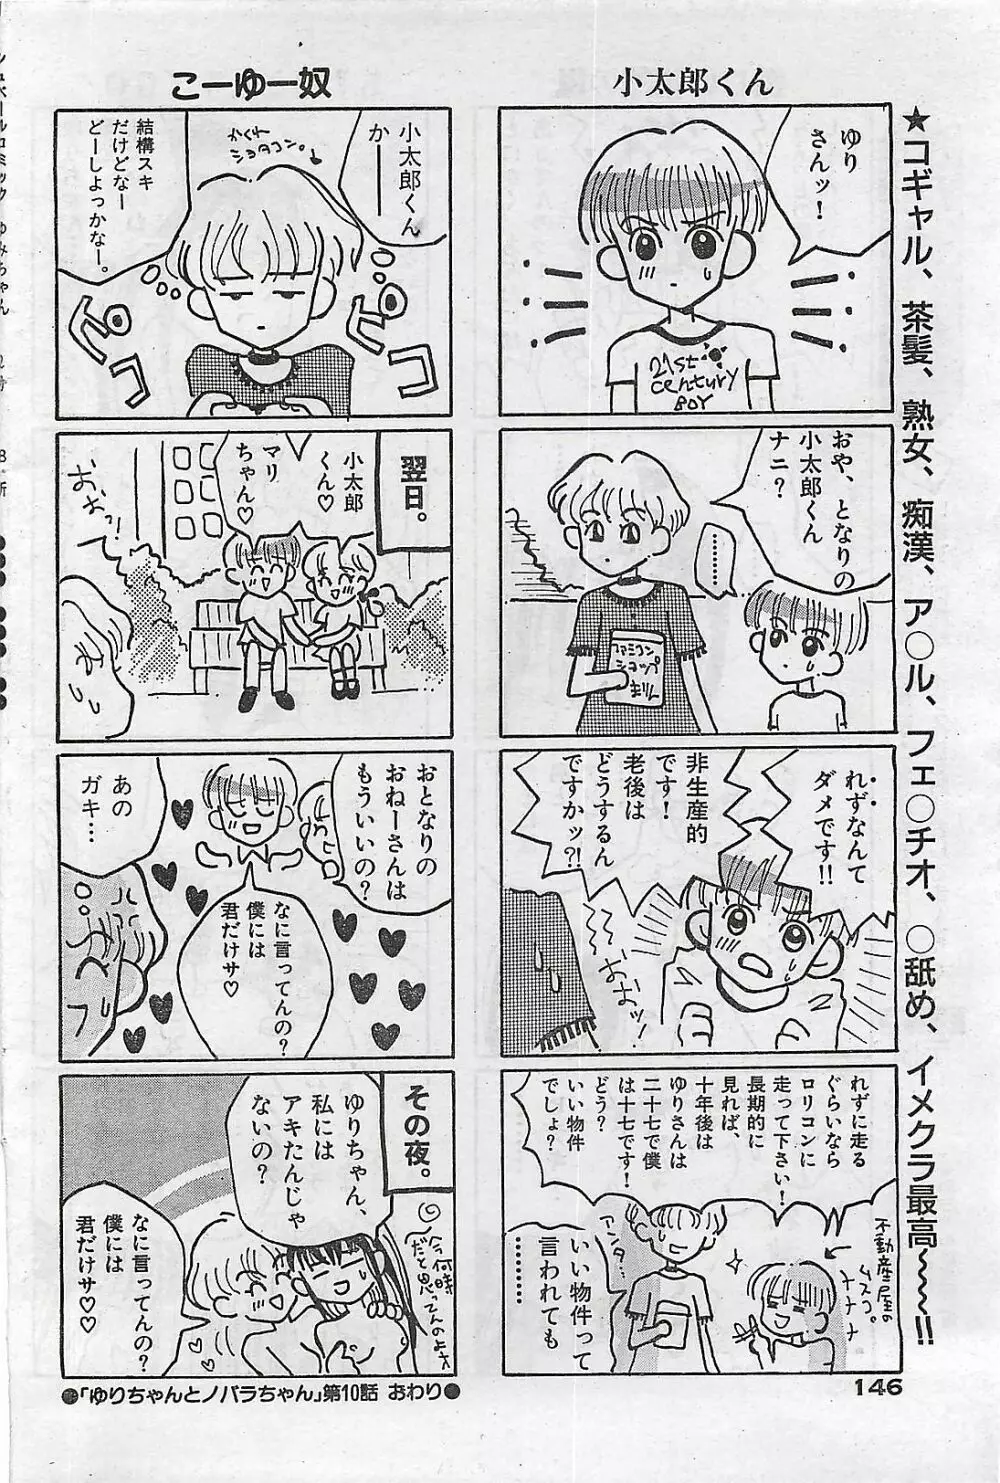 COMIC ゆみちゃん No.2 1995年08月号 146ページ